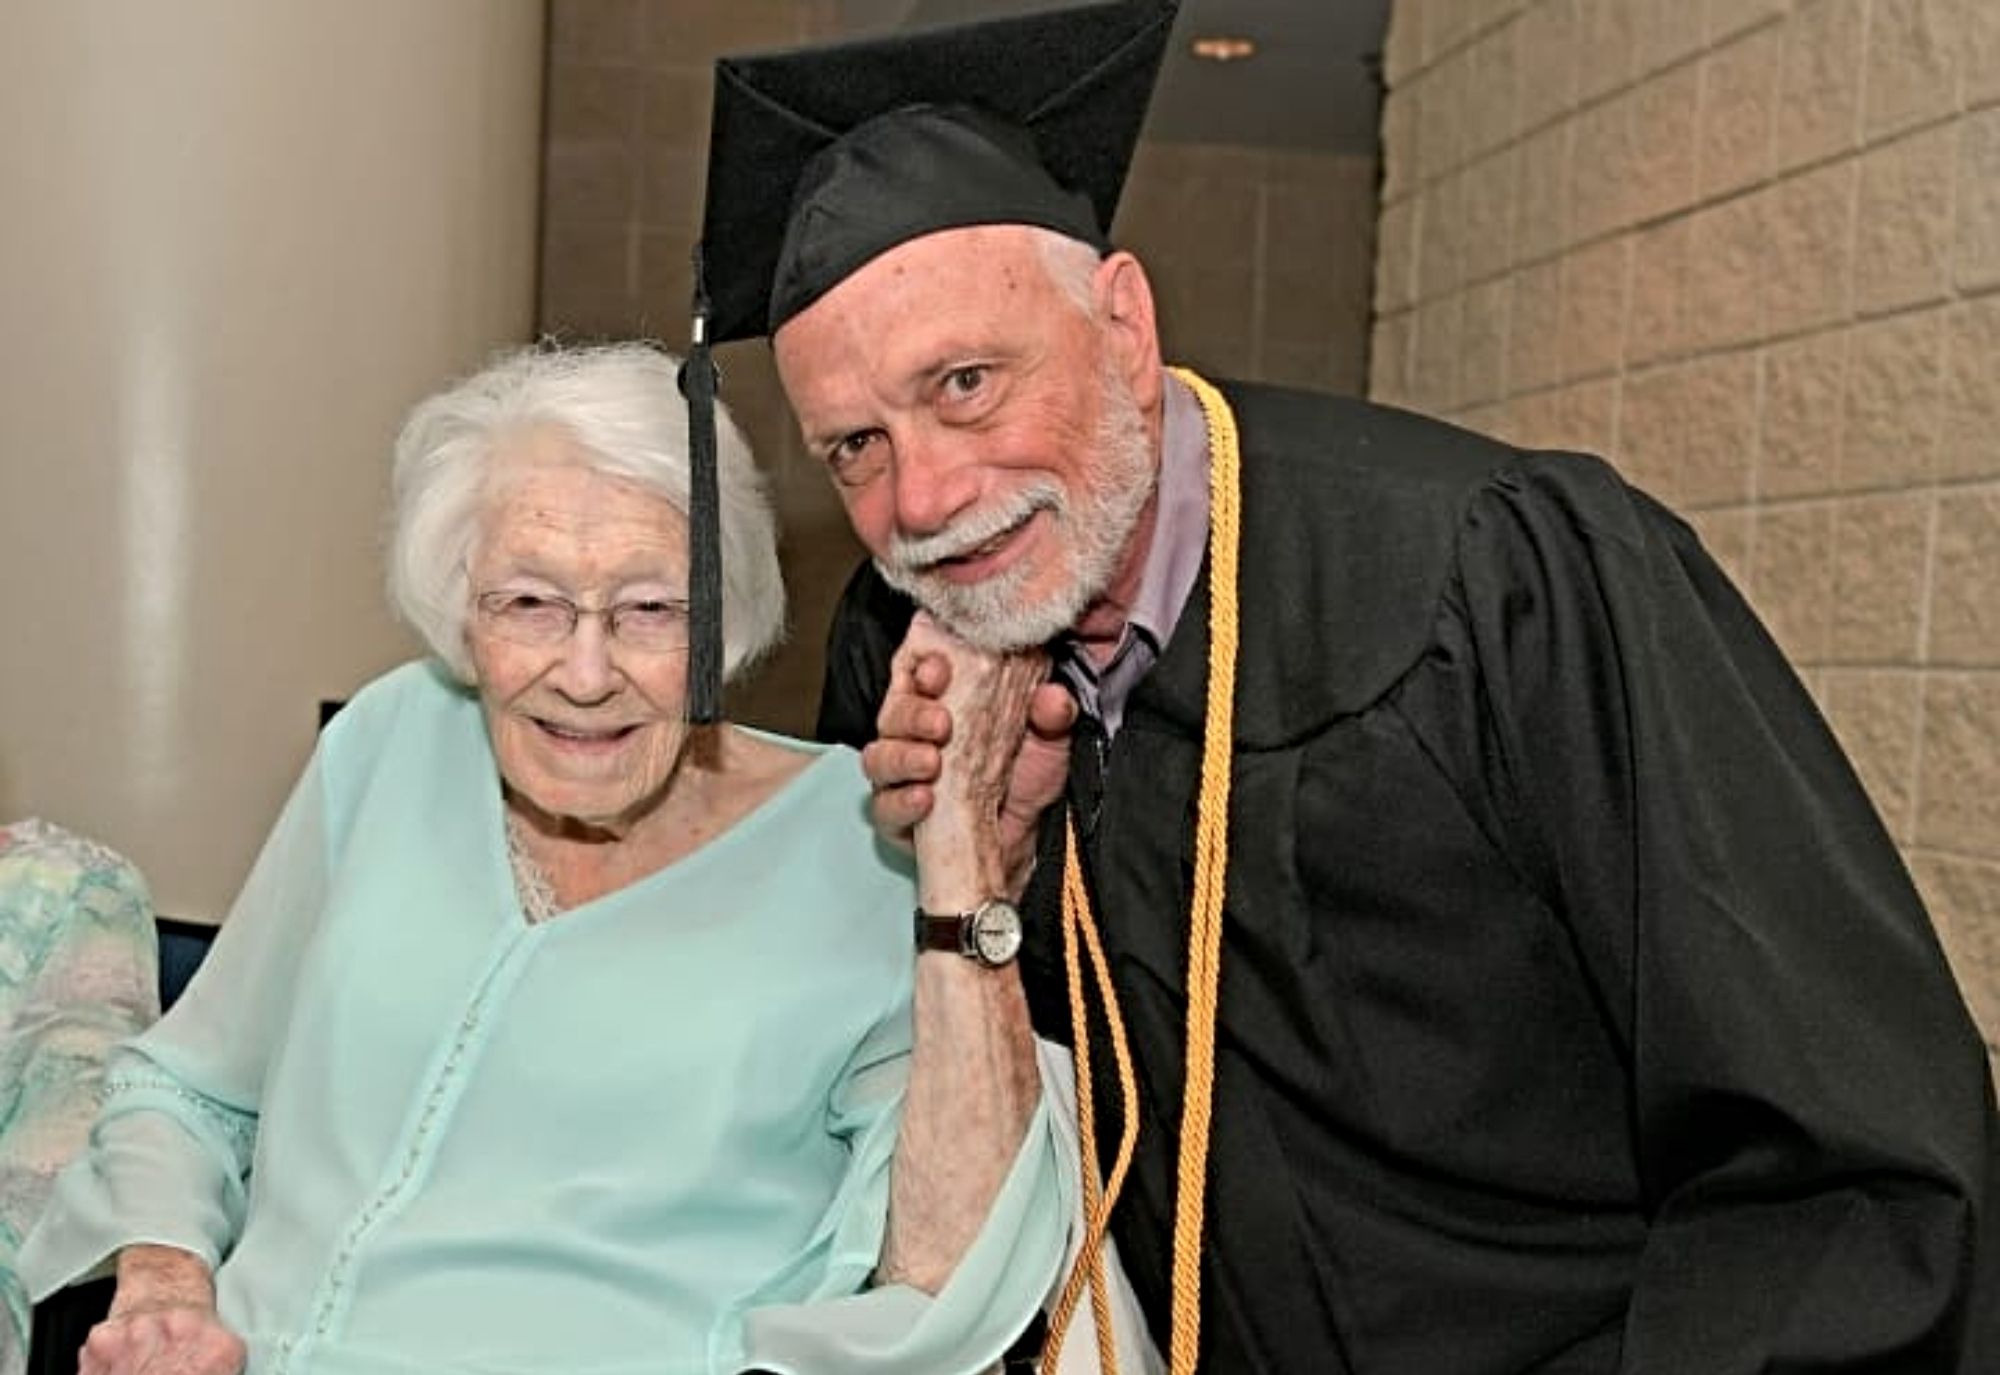 Vuelve a las aulas después de 50 años y se gradúa a los 72: "Es mi primer título universitario". Foto: Instagram